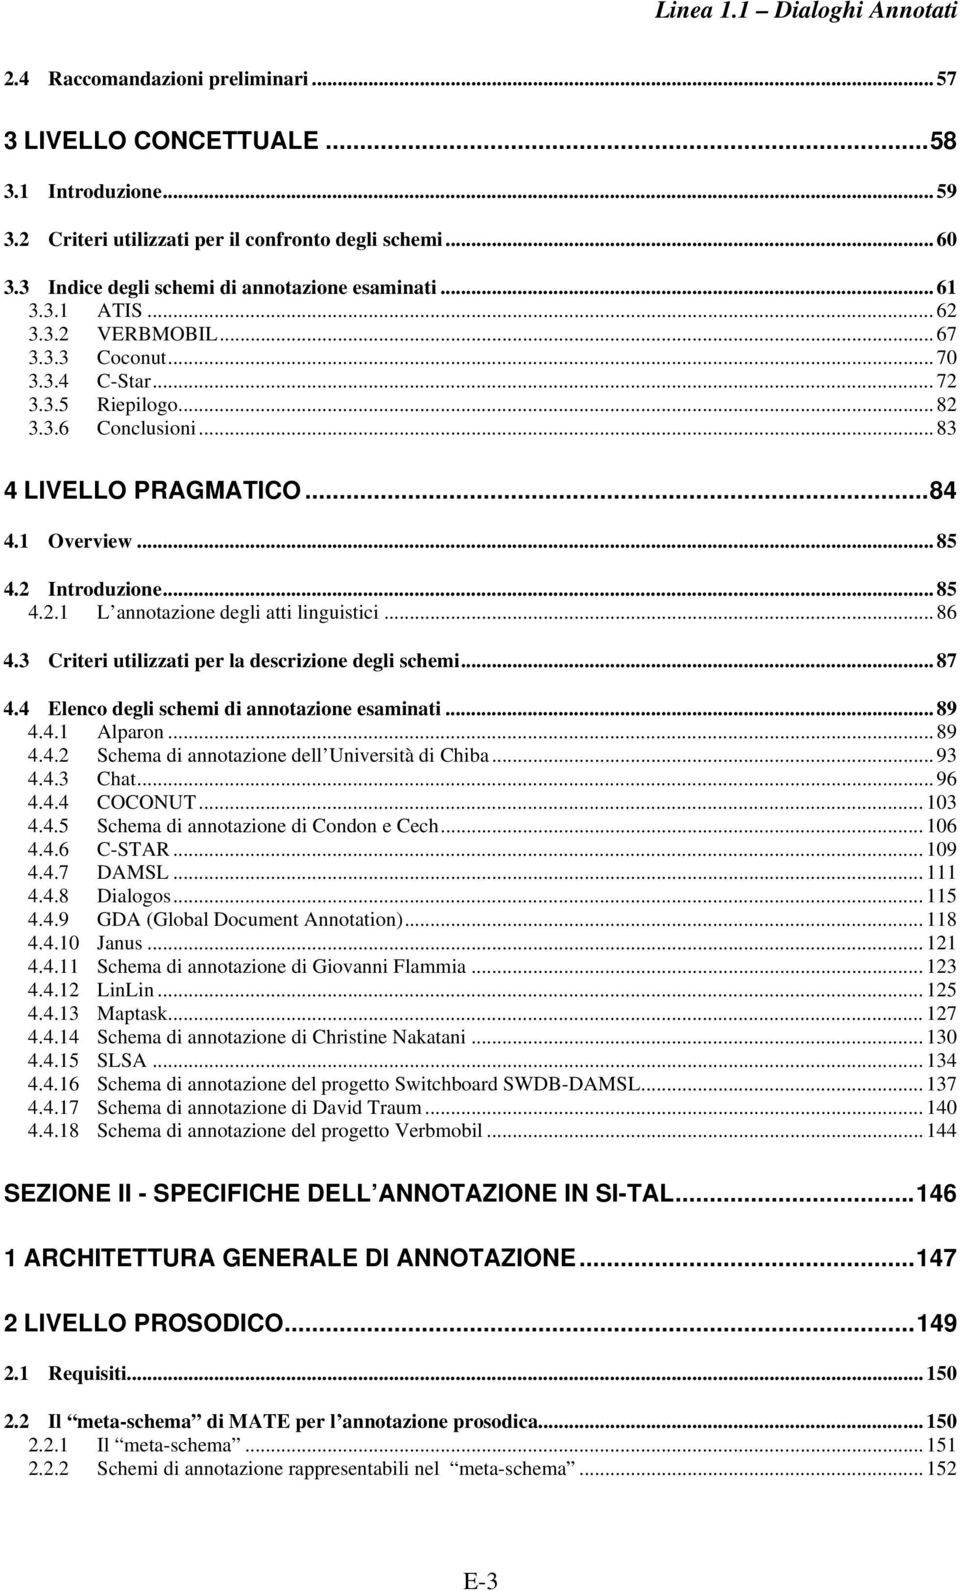 .. 86 4.3 Criteri utilizzati per la descrizione degli schemi... 87 4.4 Elenco degli schemi di annotazione esaminati... 89 4.4.1 Alparon... 89 4.4.2 Schema di annotazione dell Università di Chiba.